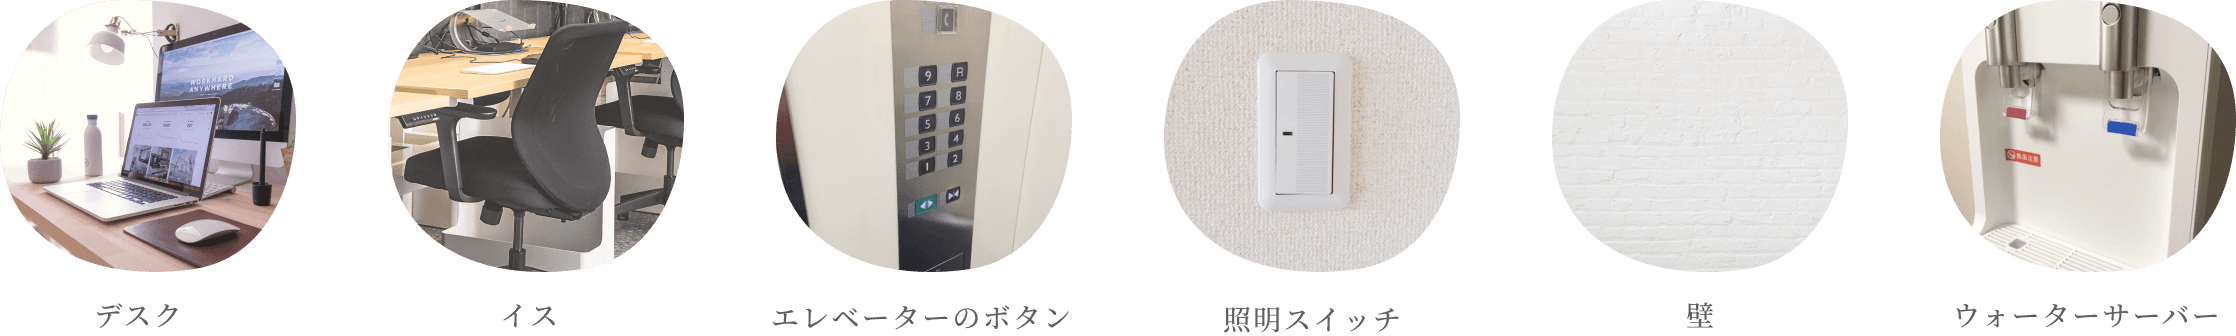 デスク、イス、エレベーターのボタン、照明スイッチ、壁、ウォーターサーバー